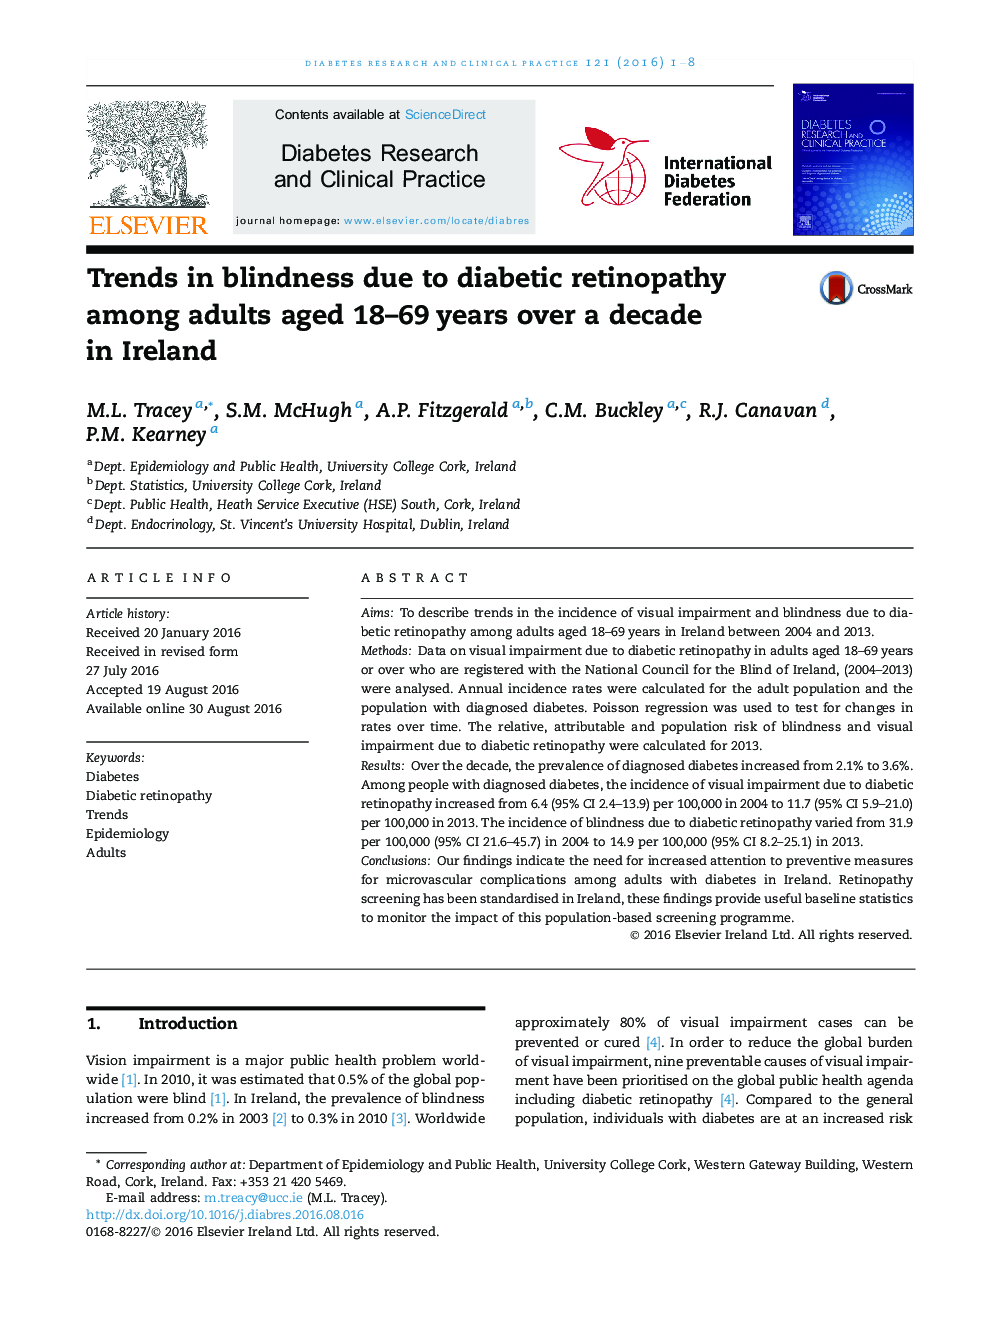 روند نابینایی به علت رتینوپاتی دیابتی در بین بزرگسالان سنین 18-69 ساله، یک سال بیش از یک دهه در ایرلند 